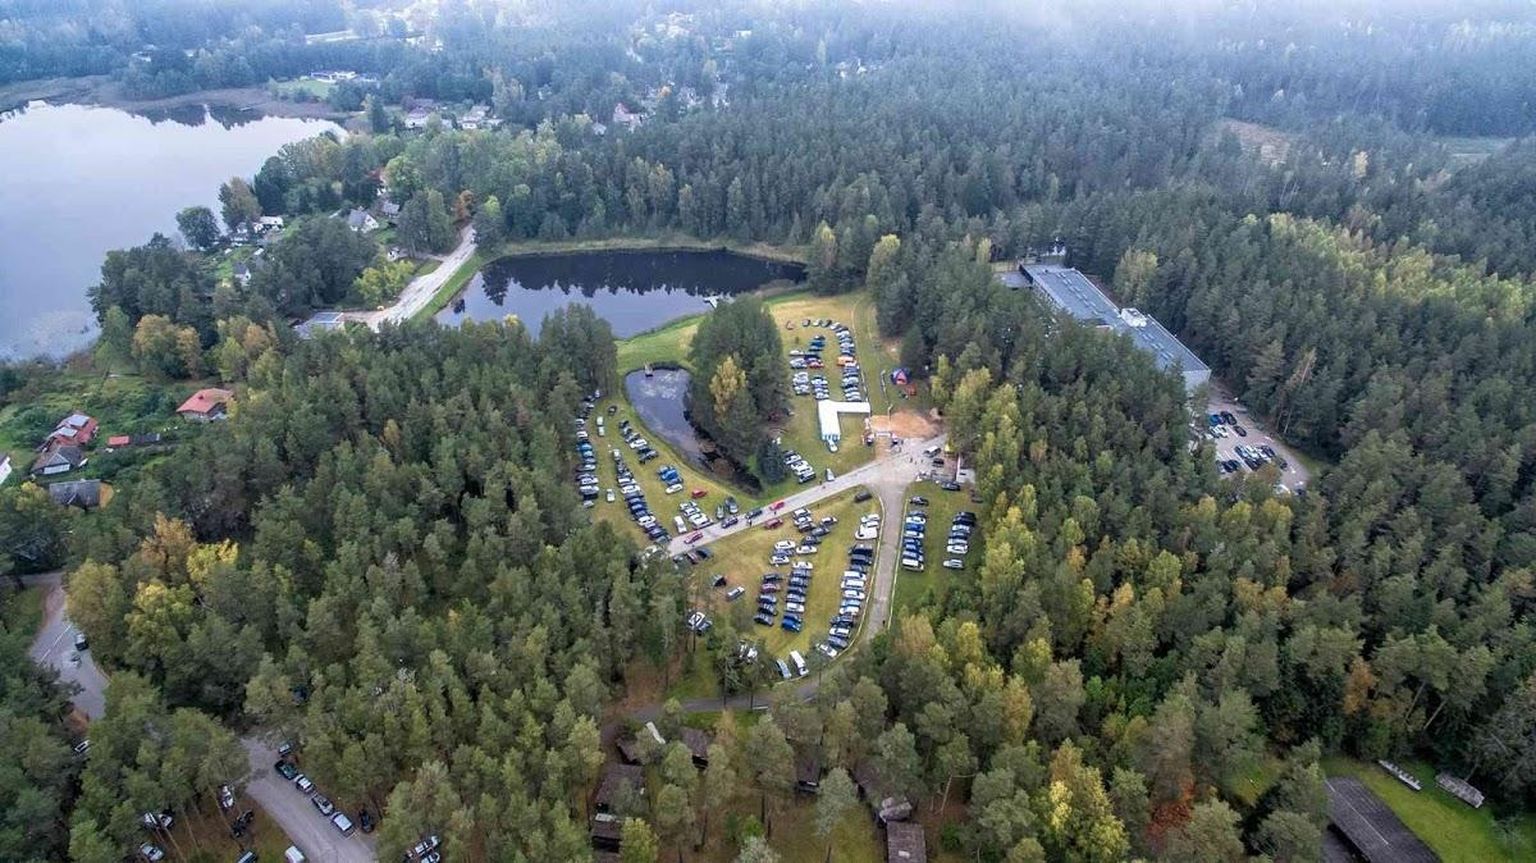 Kubija hotell-loodusspaa (paremal) asub praegu metsa sees, mida külastajad omaniku Aigar Pindmaa sõnul sageli eraldi väärtusena välja toovad.